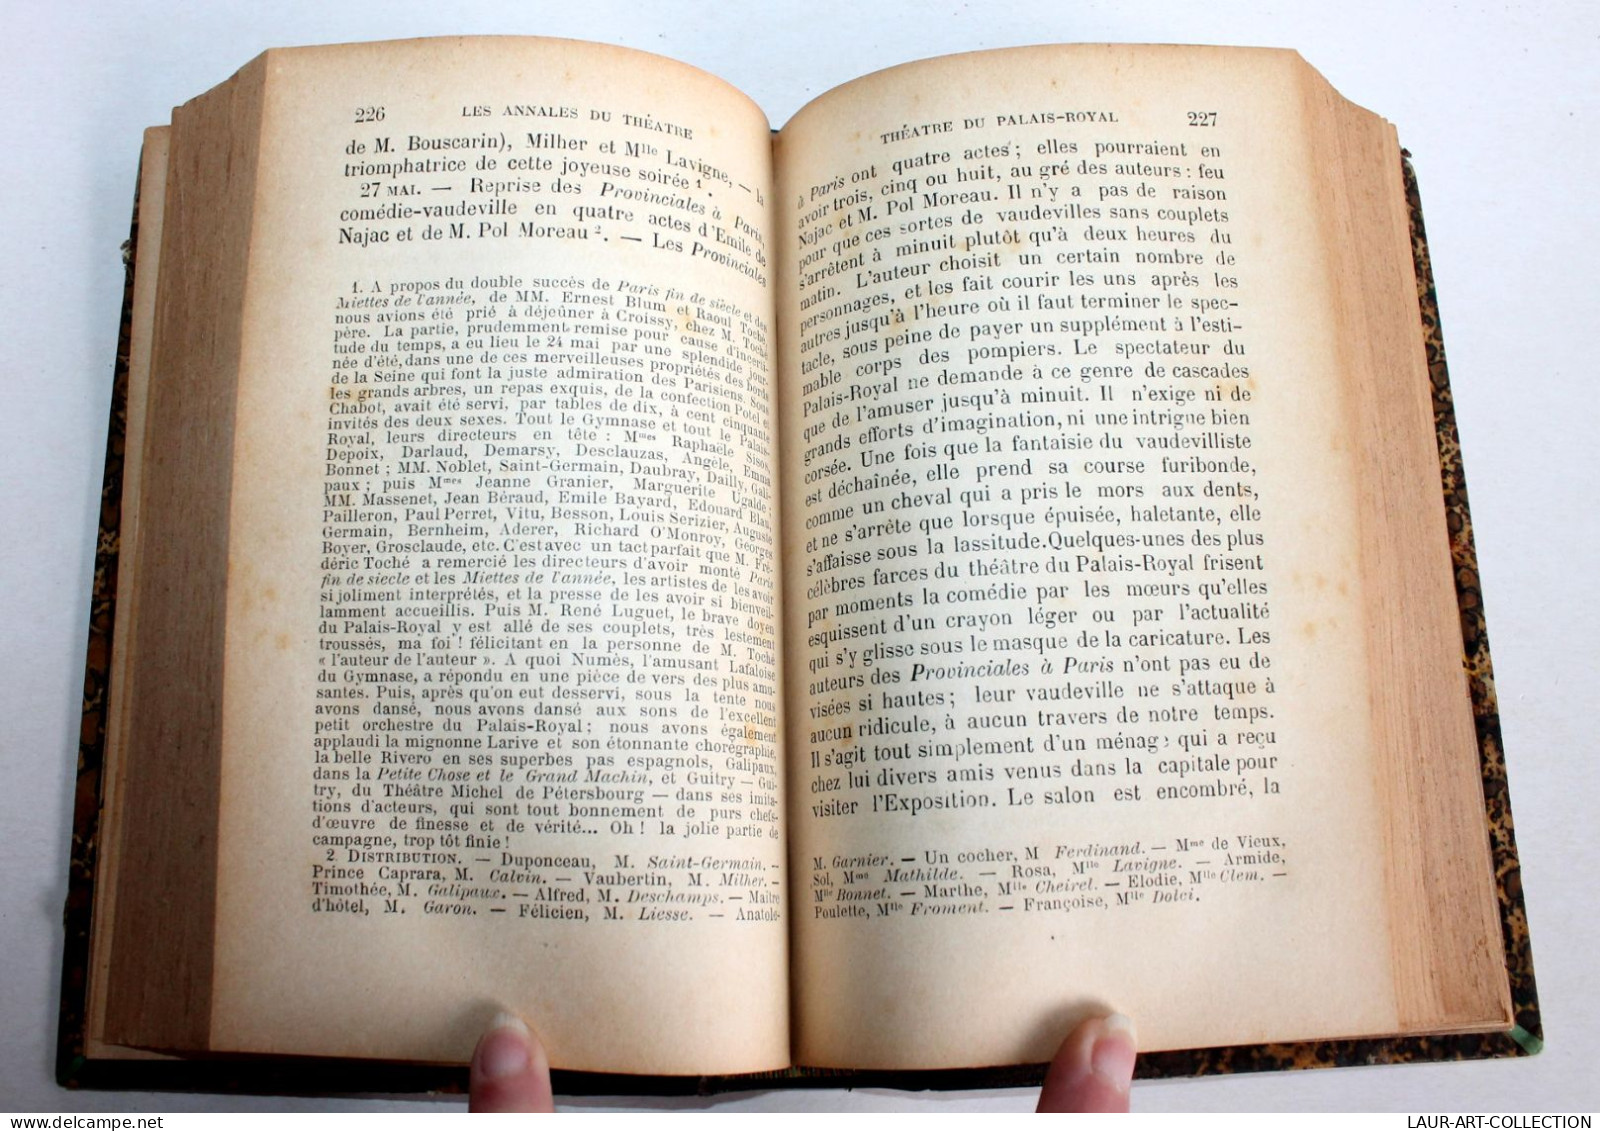 ANNALES DU THEATRE ET DE LA MUSIQUE De NOEL & STOULLIG + PREFACE, 16e ANNEE 1891 / ANCIEN LIVRE XIXe SIECLE (1803.52) - French Authors